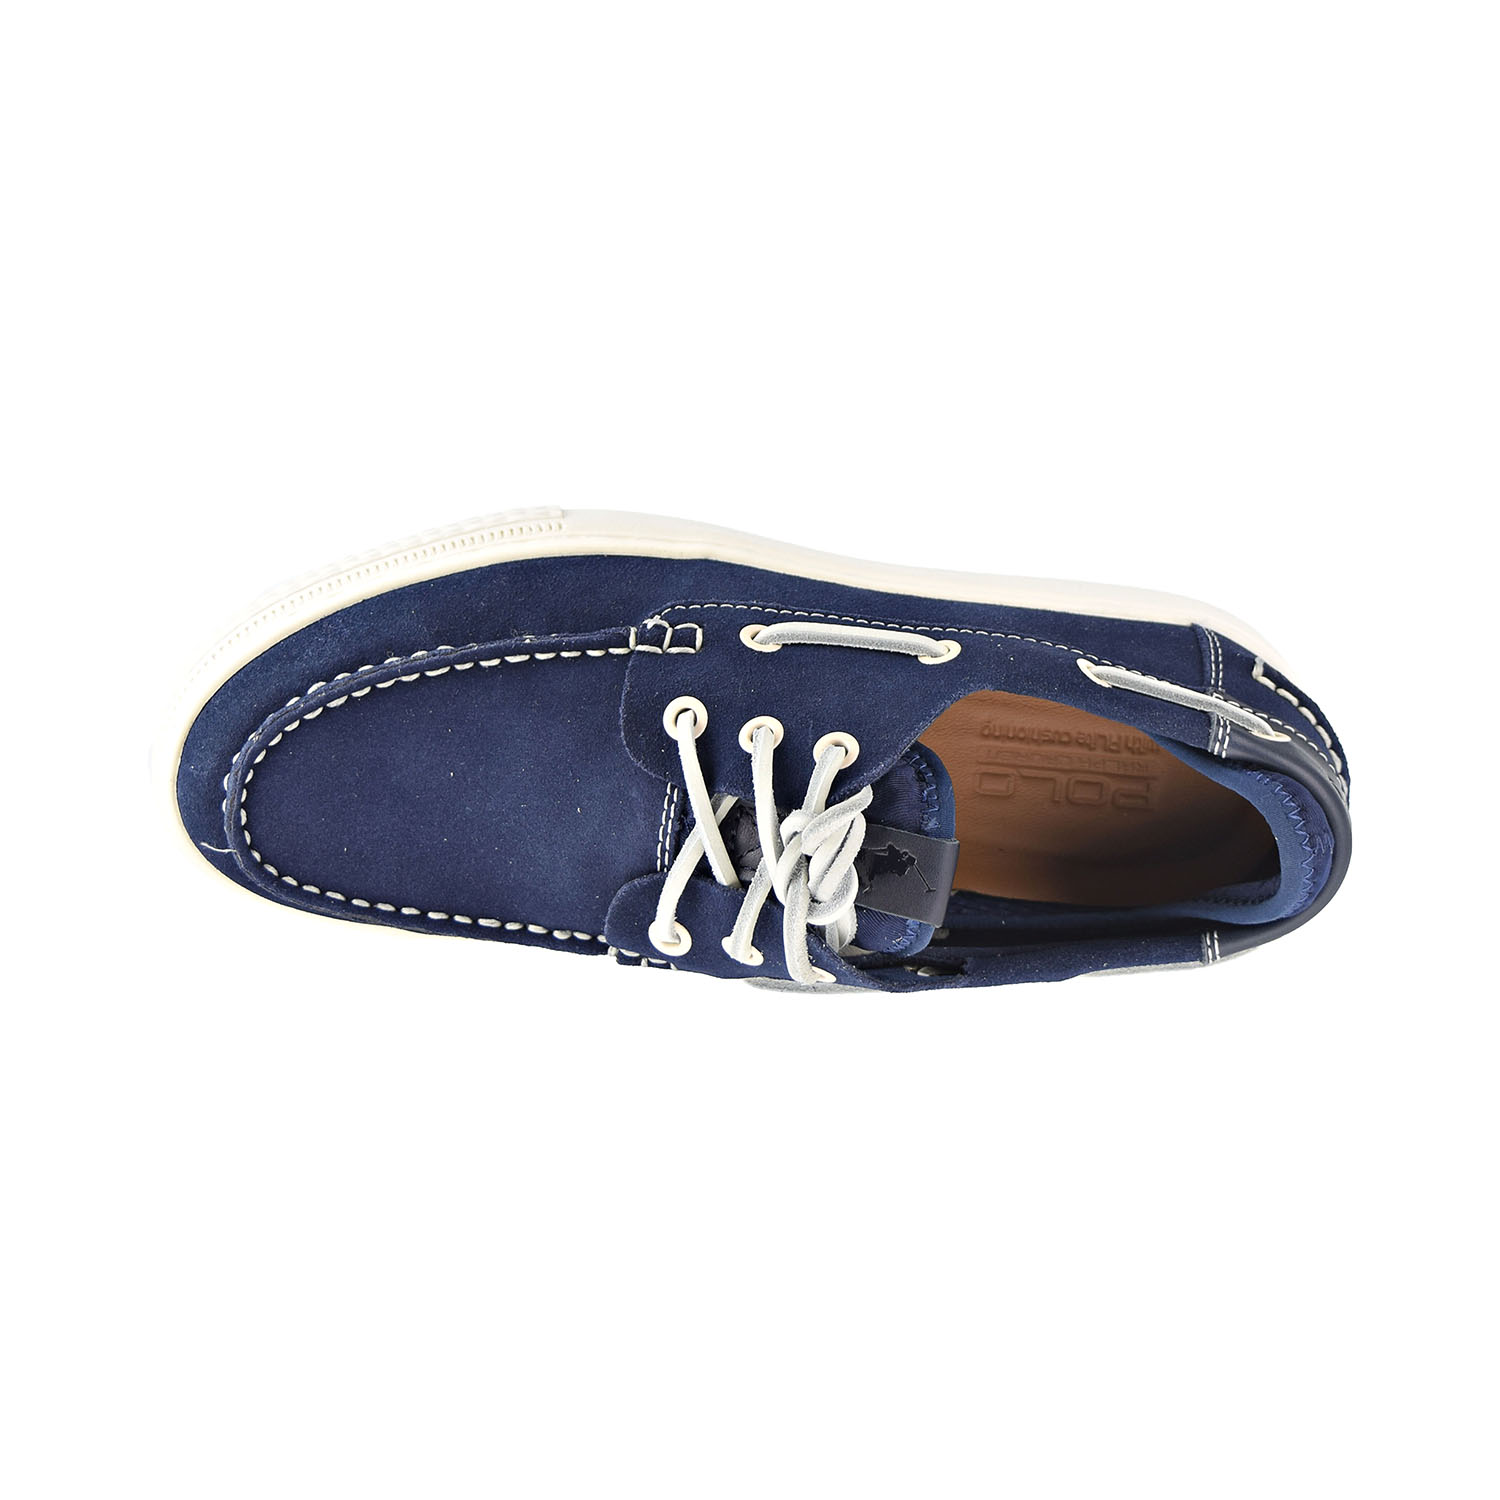 Polo Ralph Lauren Deck100 Men's Shoes Navy-Tan  809732272-001 - image 5 of 6